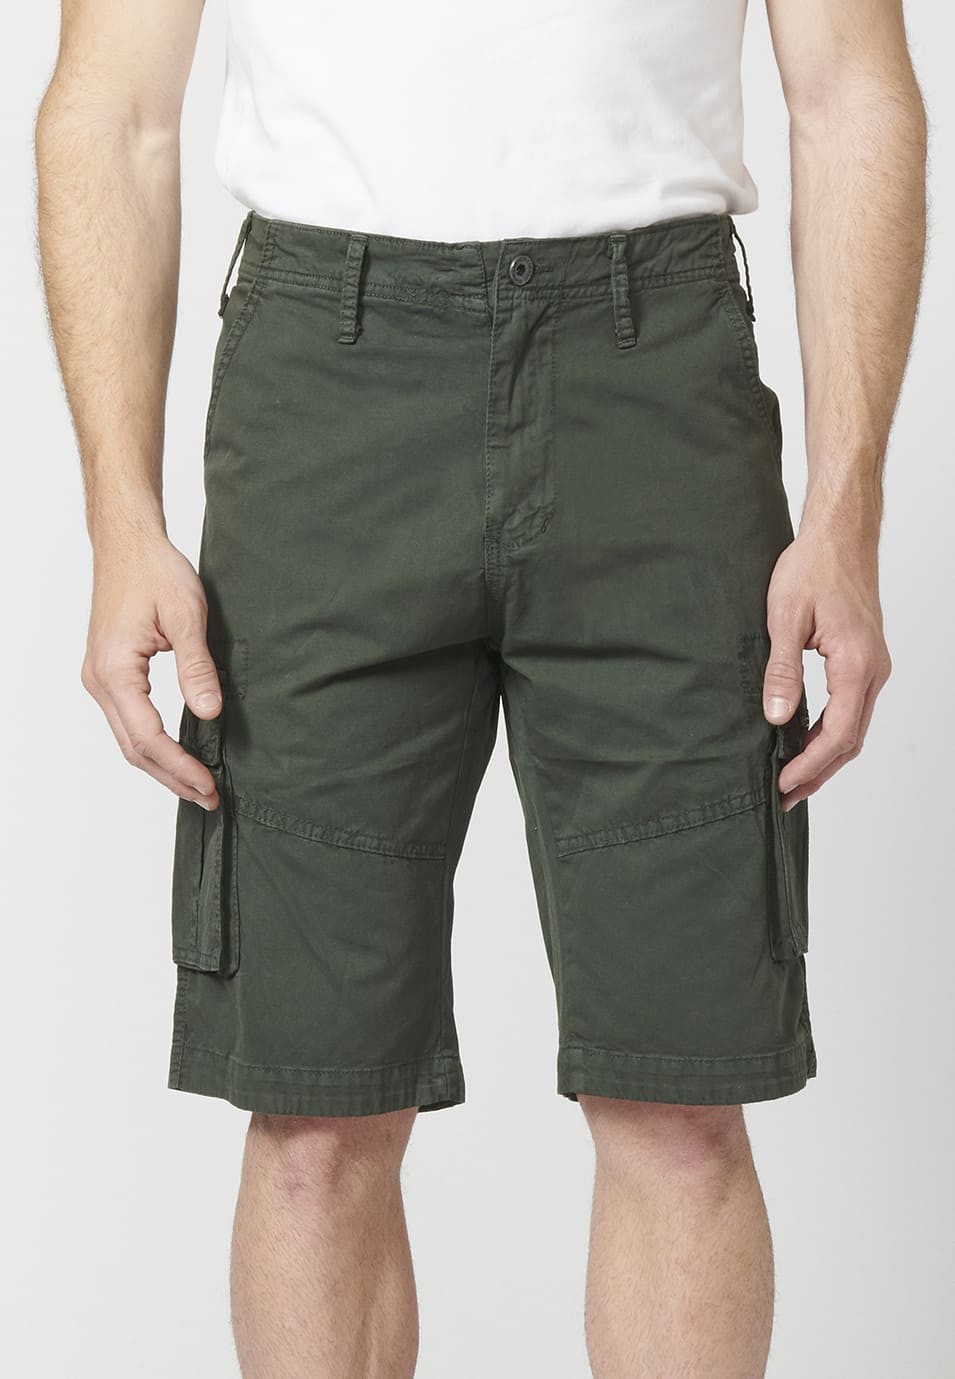 Bermuda pantalón corto estilo cargo para hombre con seis bolsillos 3